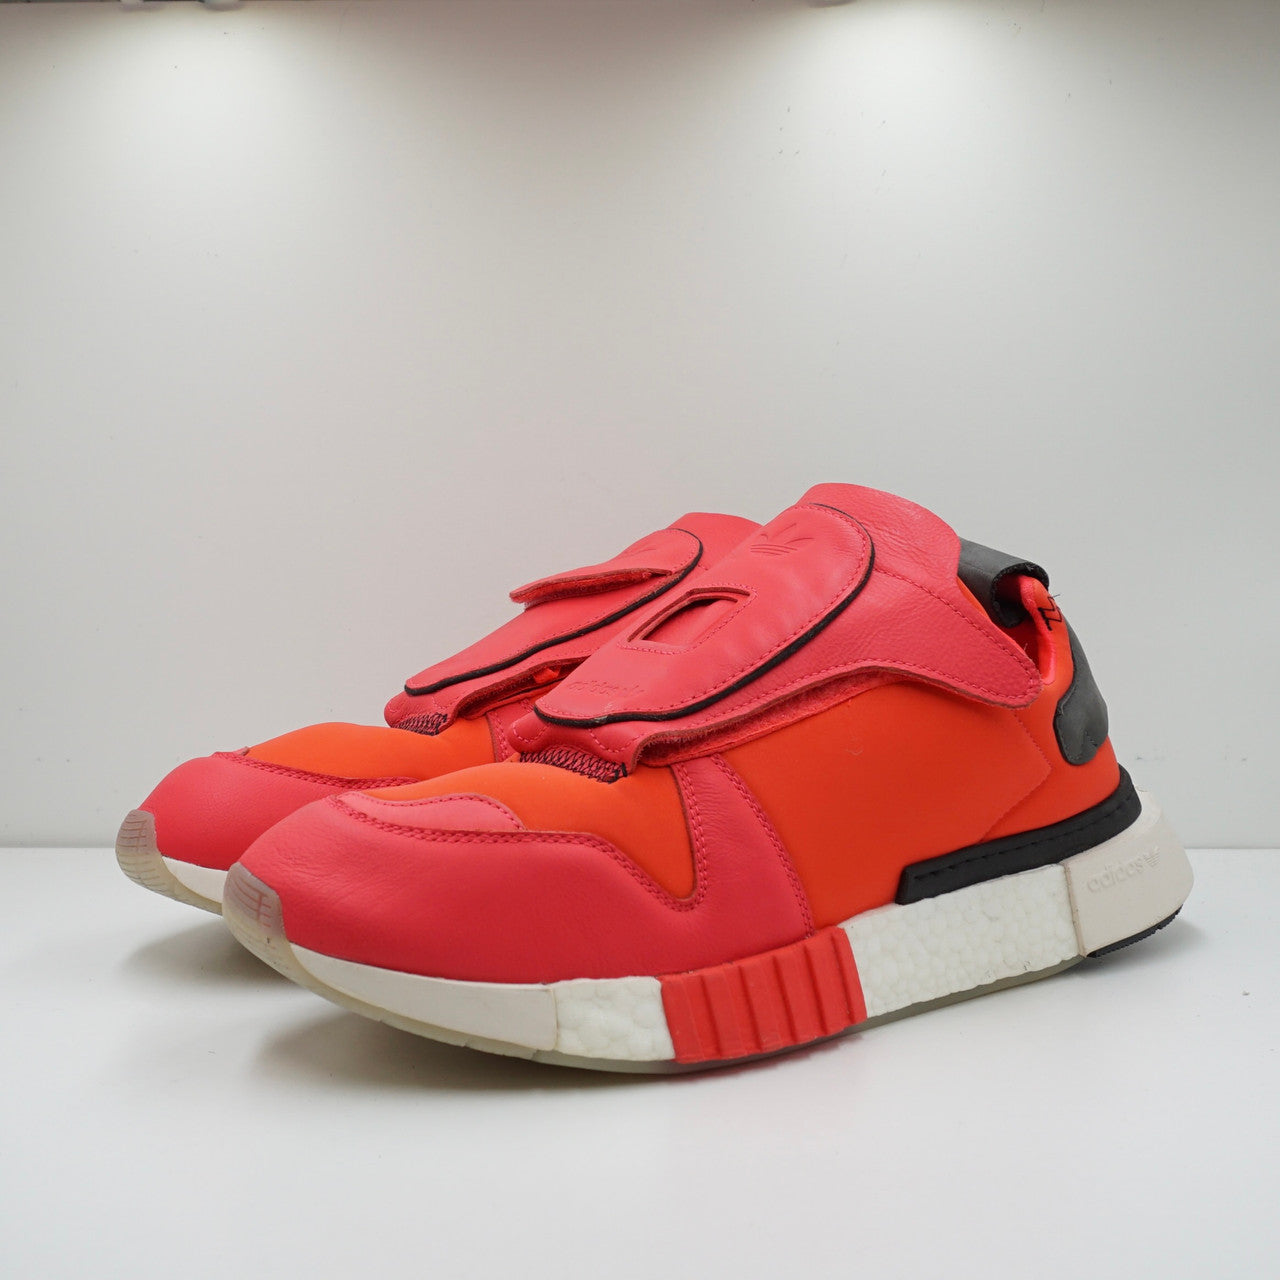 Adidas Futurepacer Shock Red